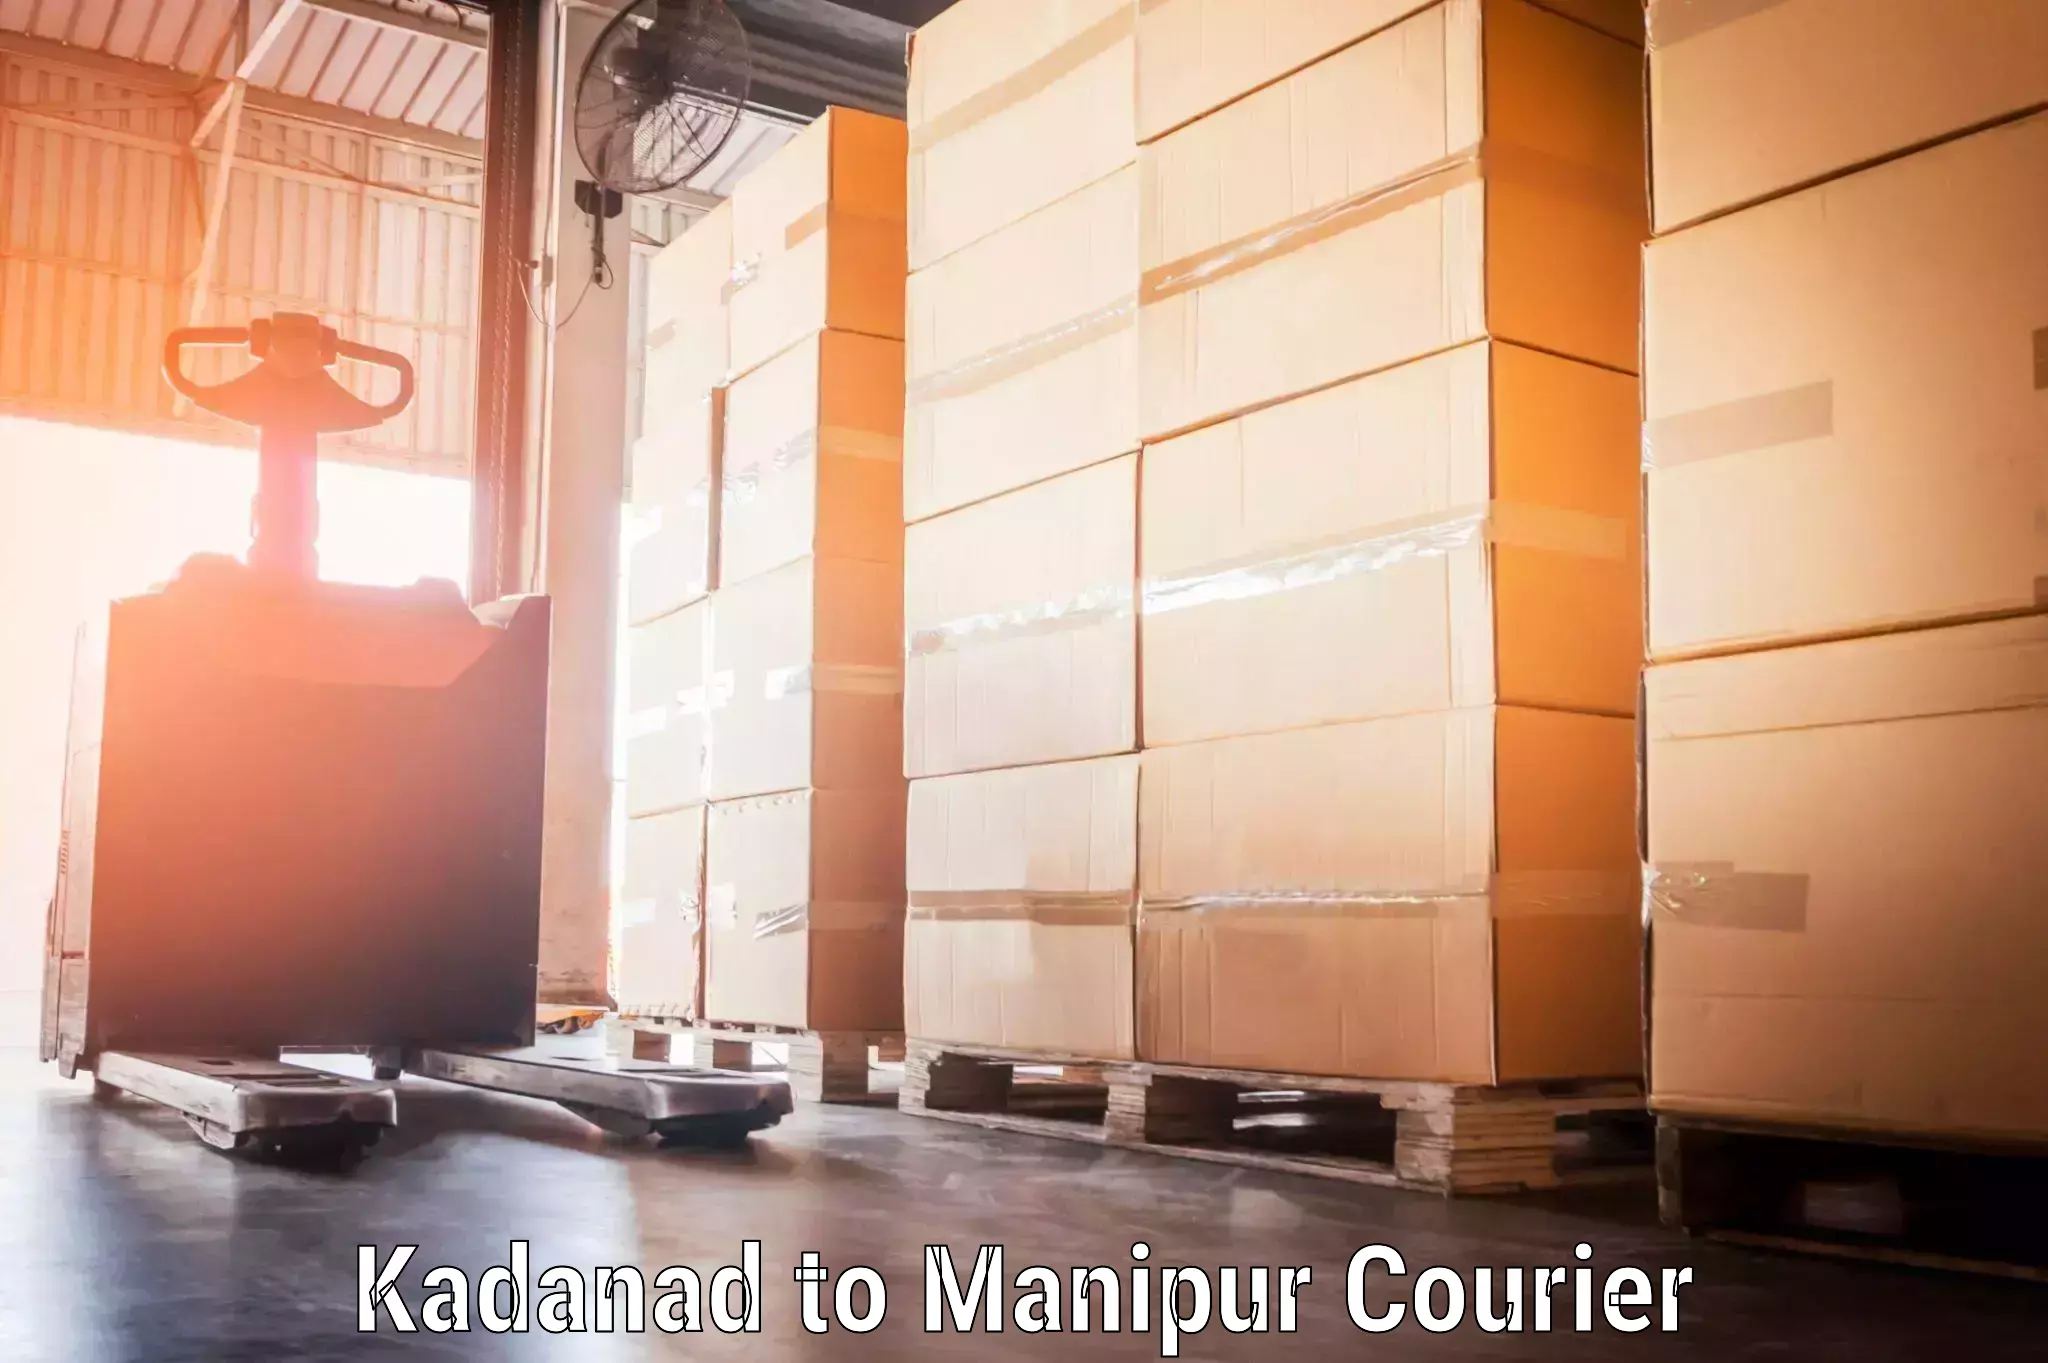 Door-to-door baggage service Kadanad to NIT Manipur